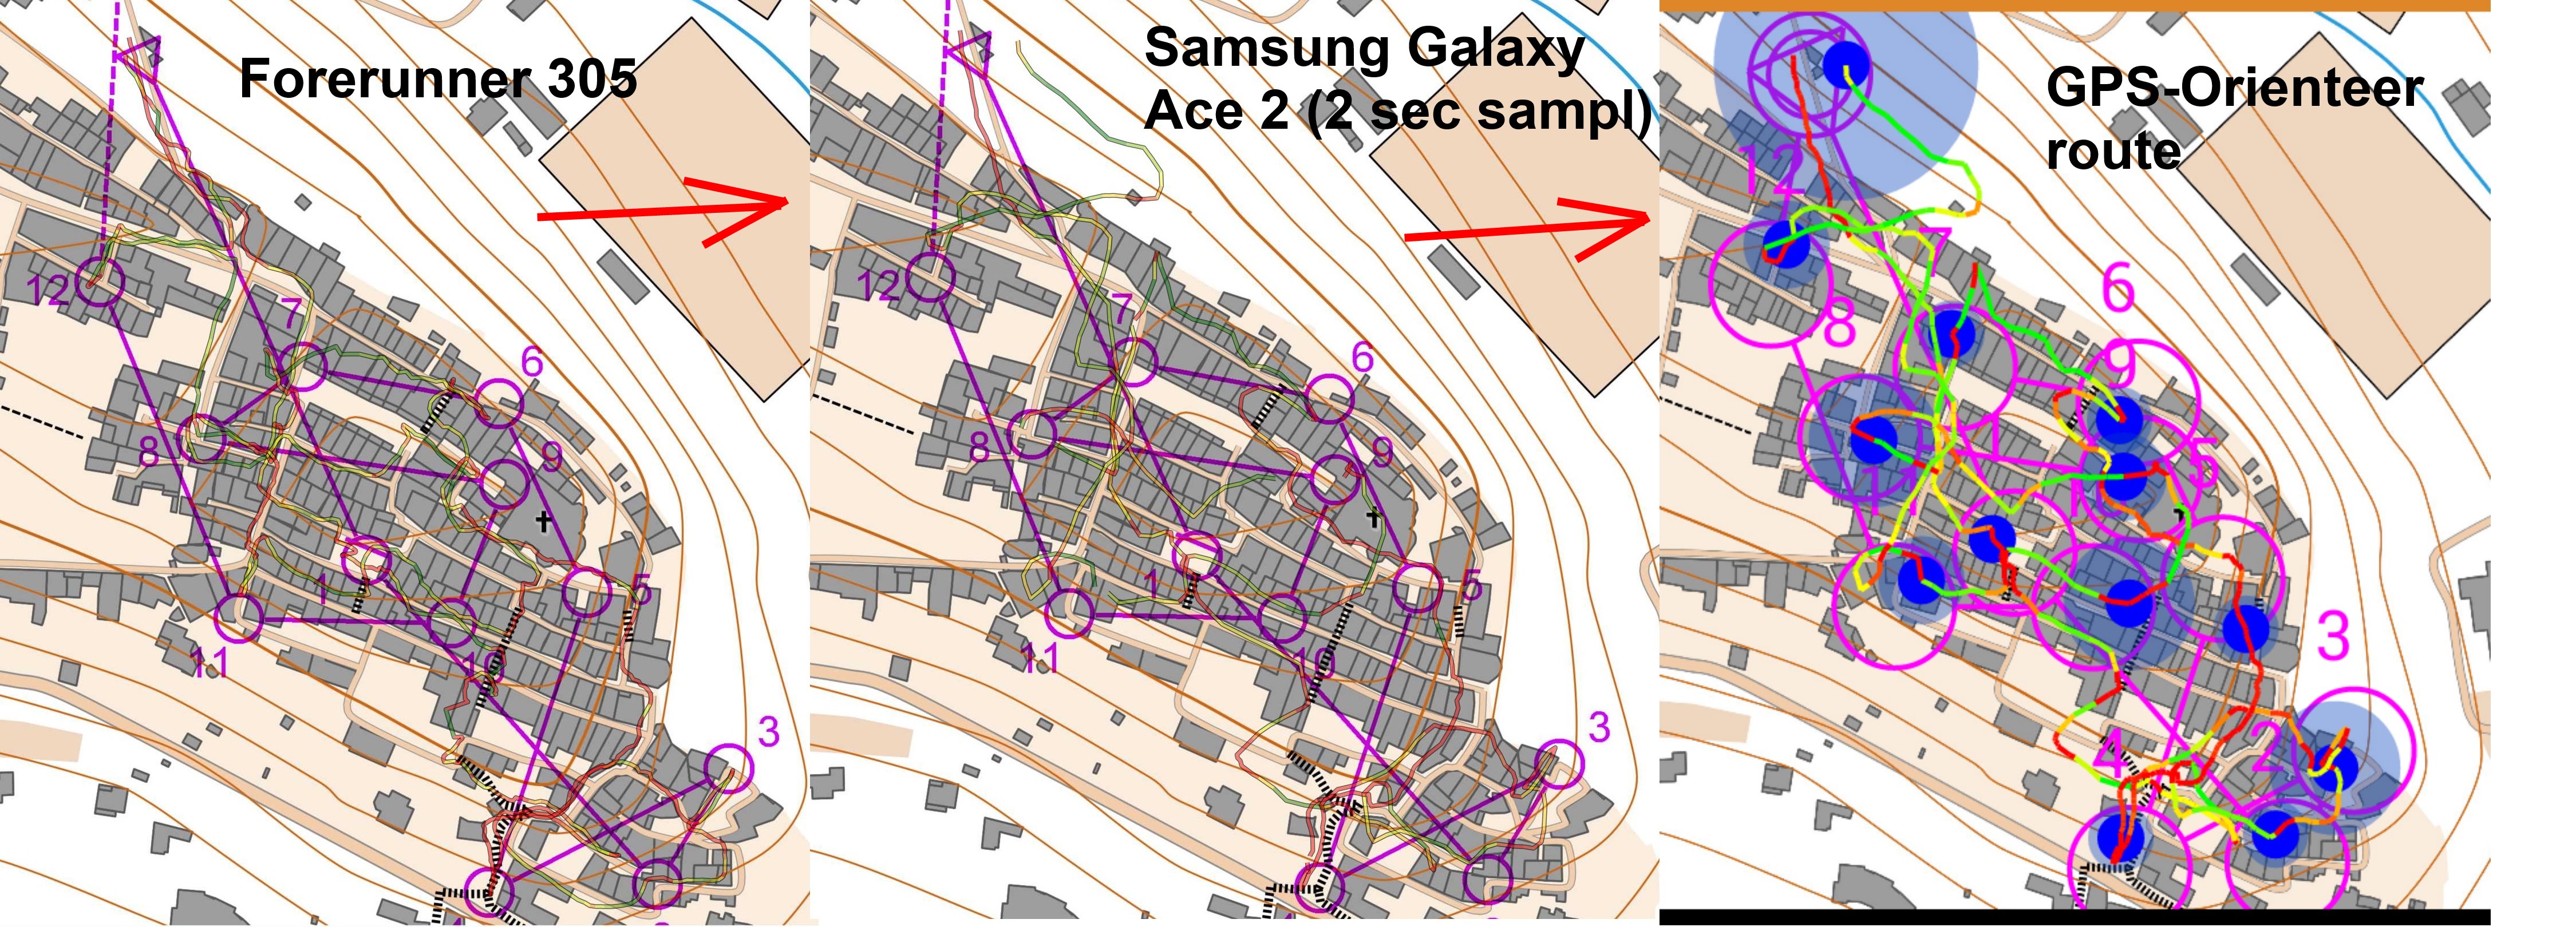 Test of GPS-Orienteering app in town (29-10-2013)